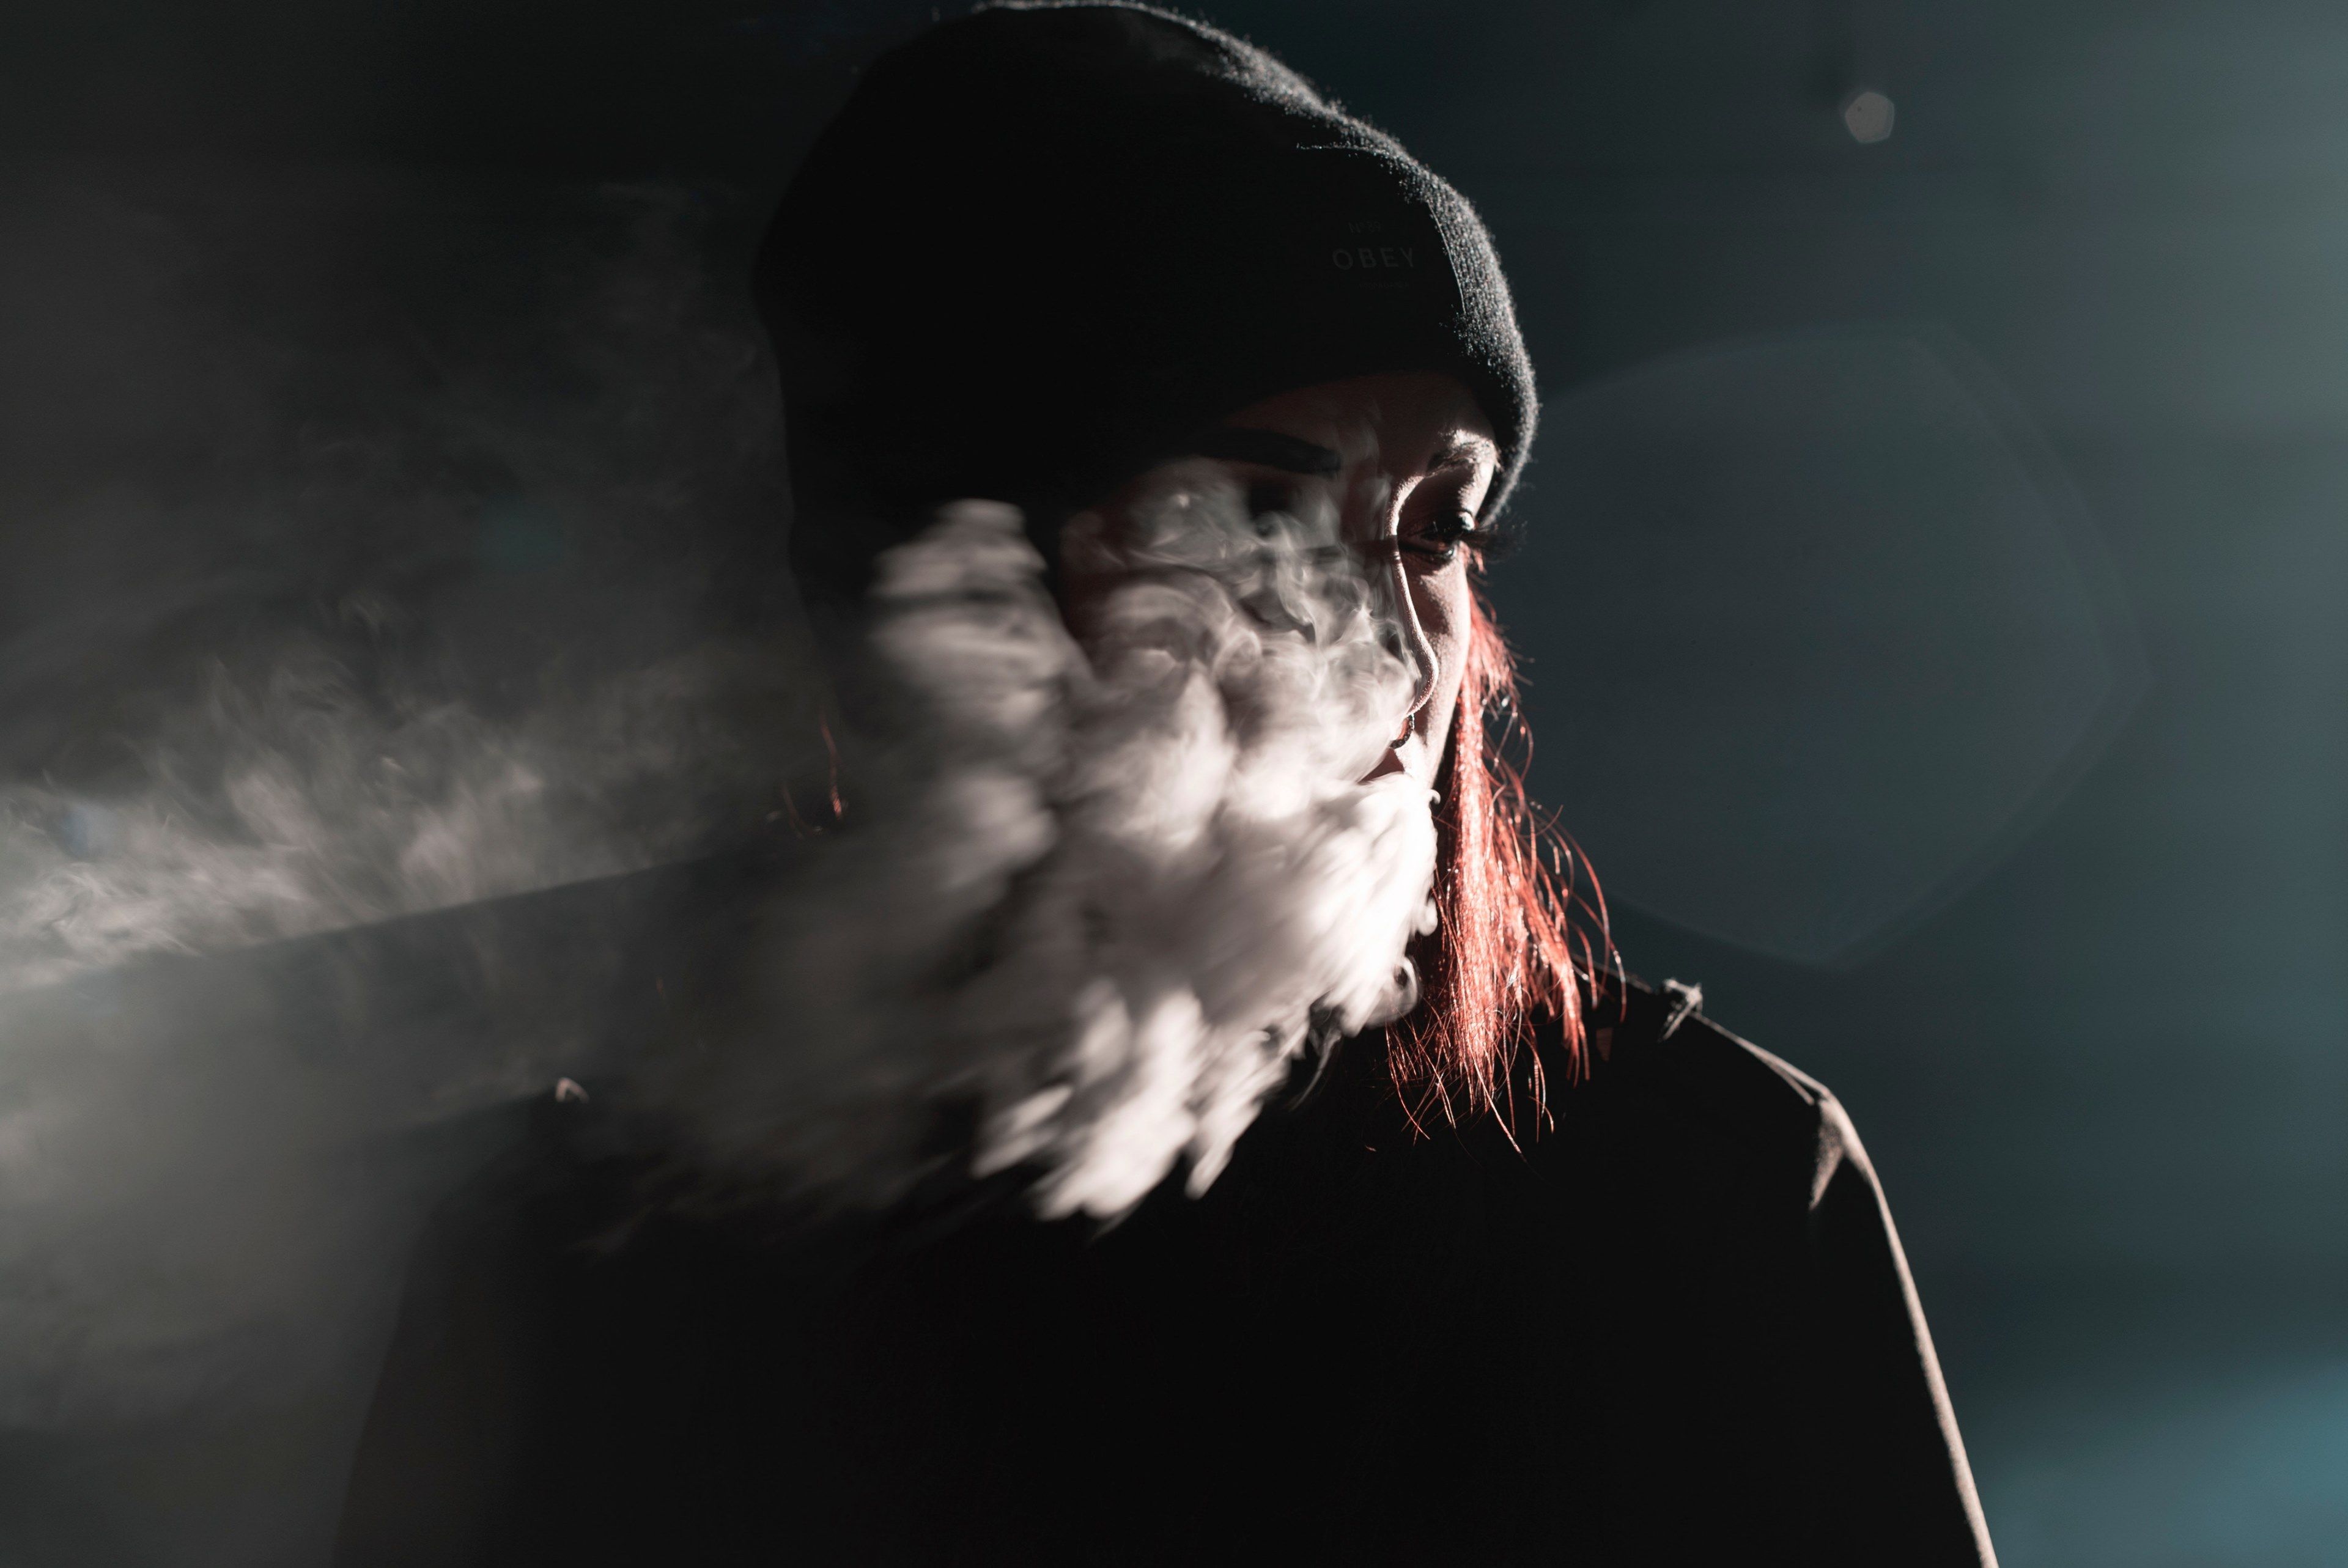 Wallpaper / portrait smoking woman and smoke HD 4k